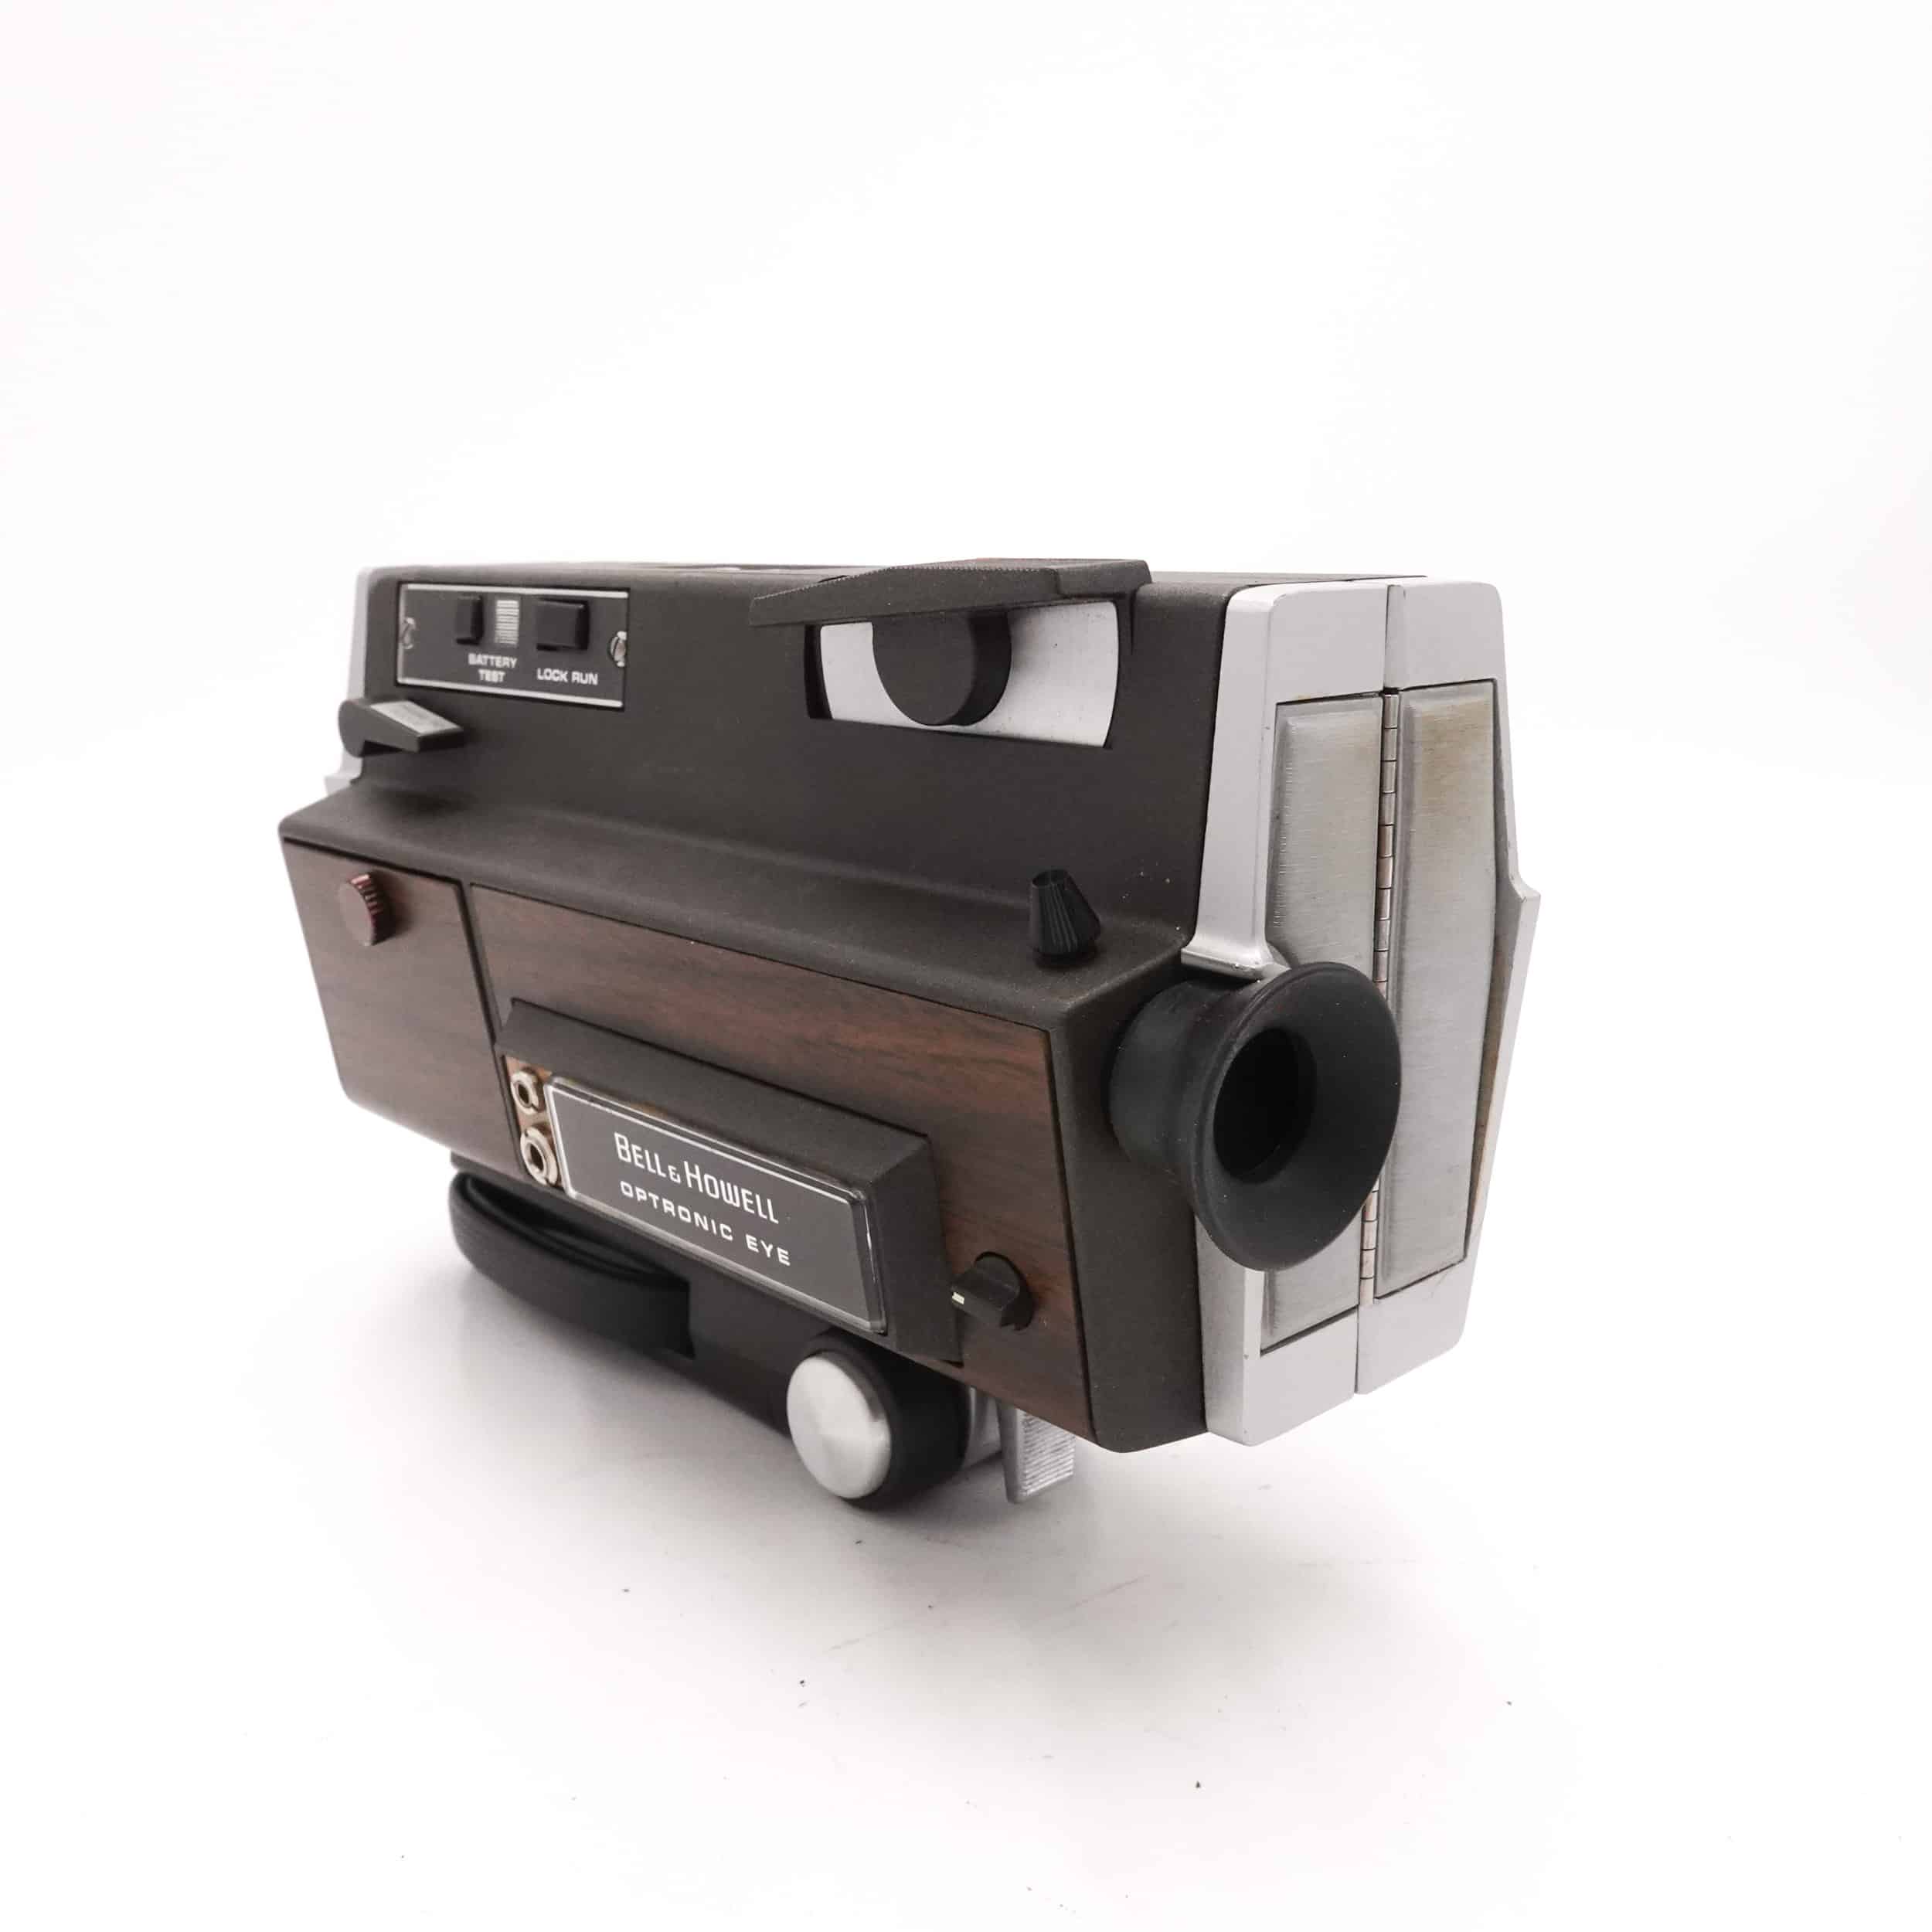 Bell & Howell Autoload Model 442 Super 8 Camera